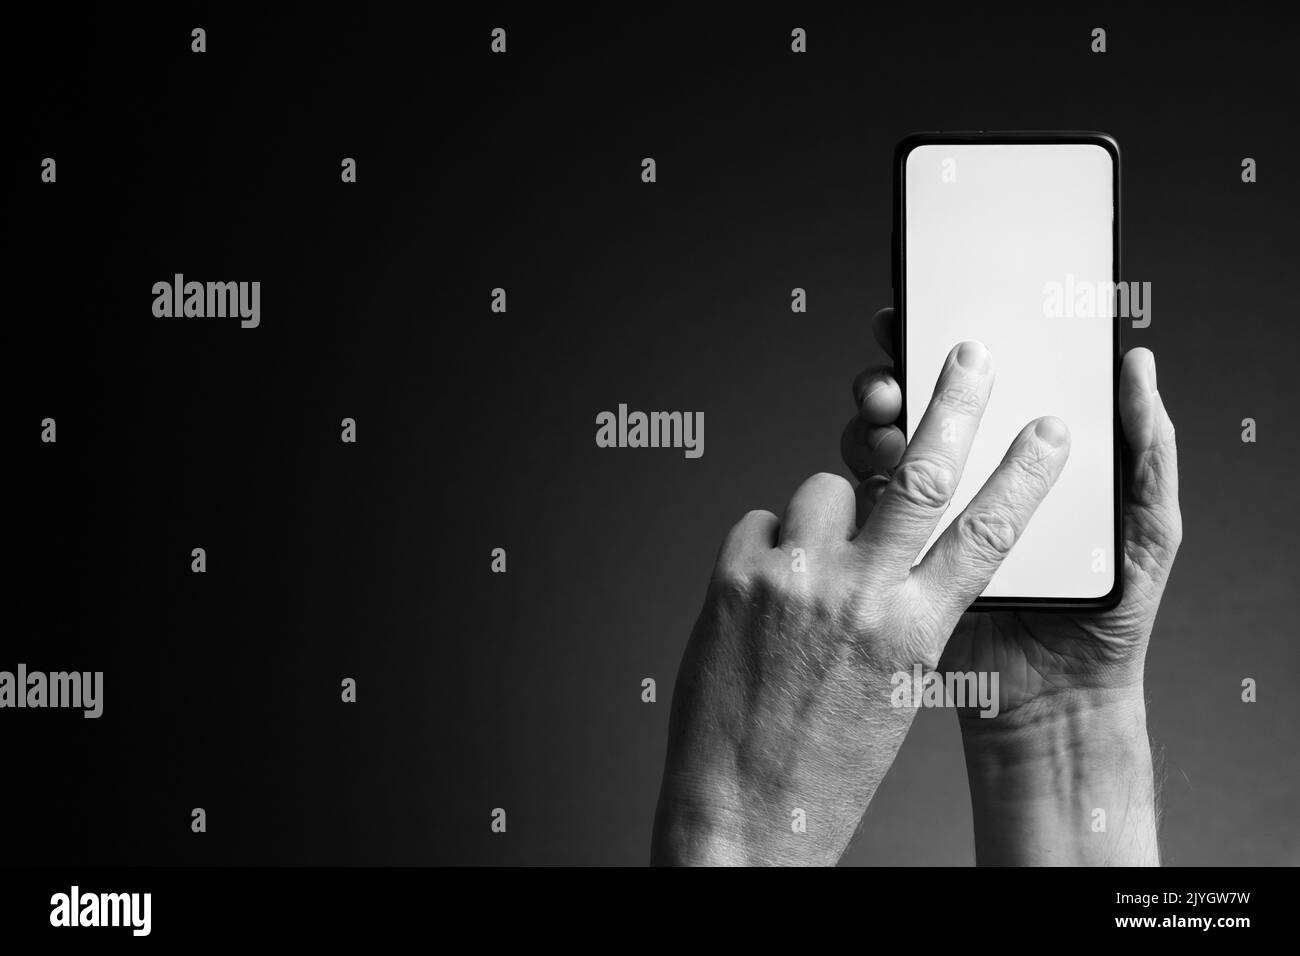 Image en noir et blanc des mains de l'homme tenant le smartphone et panoramique à deux doigts avec écran blanc vierge isolé sur fond sombre avec espace de copie Banque D'Images